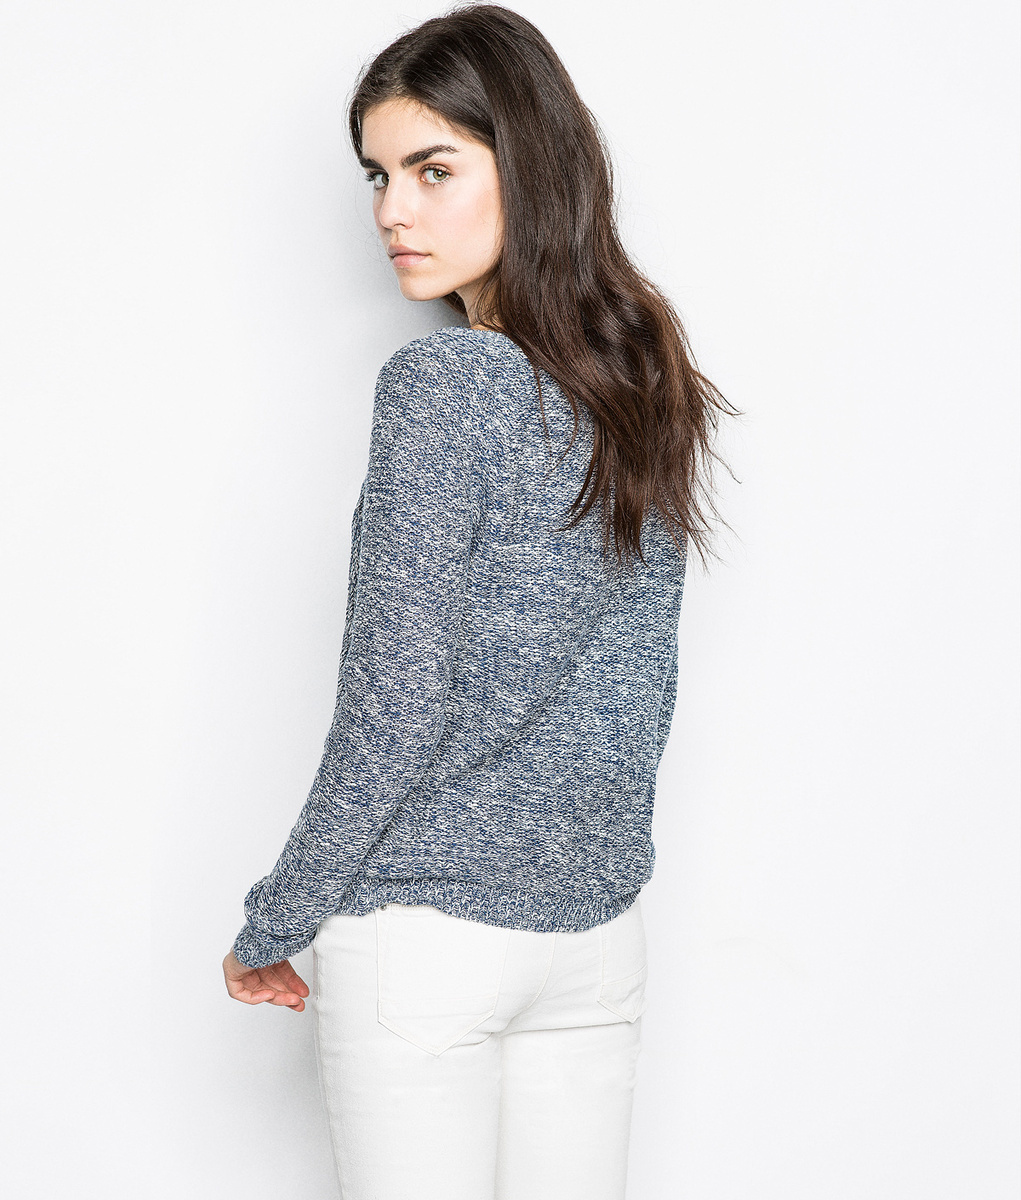 Springfield fordított kötésű női pulóver 2015 fotója